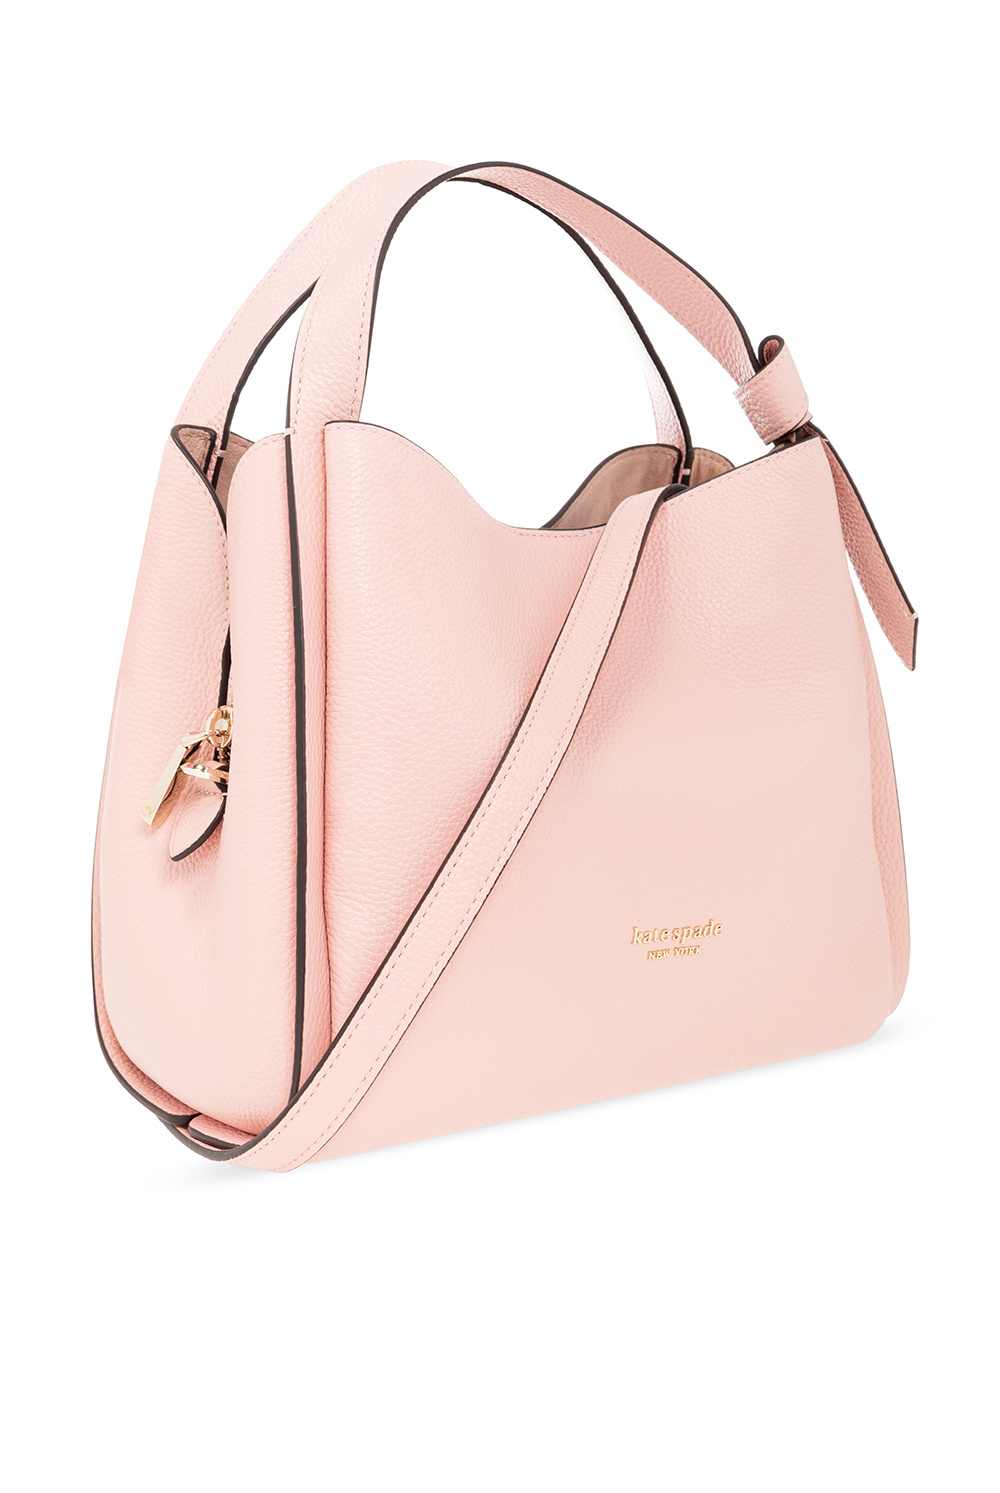 Kate Spade Hot Pink/Coral Handbag EUC